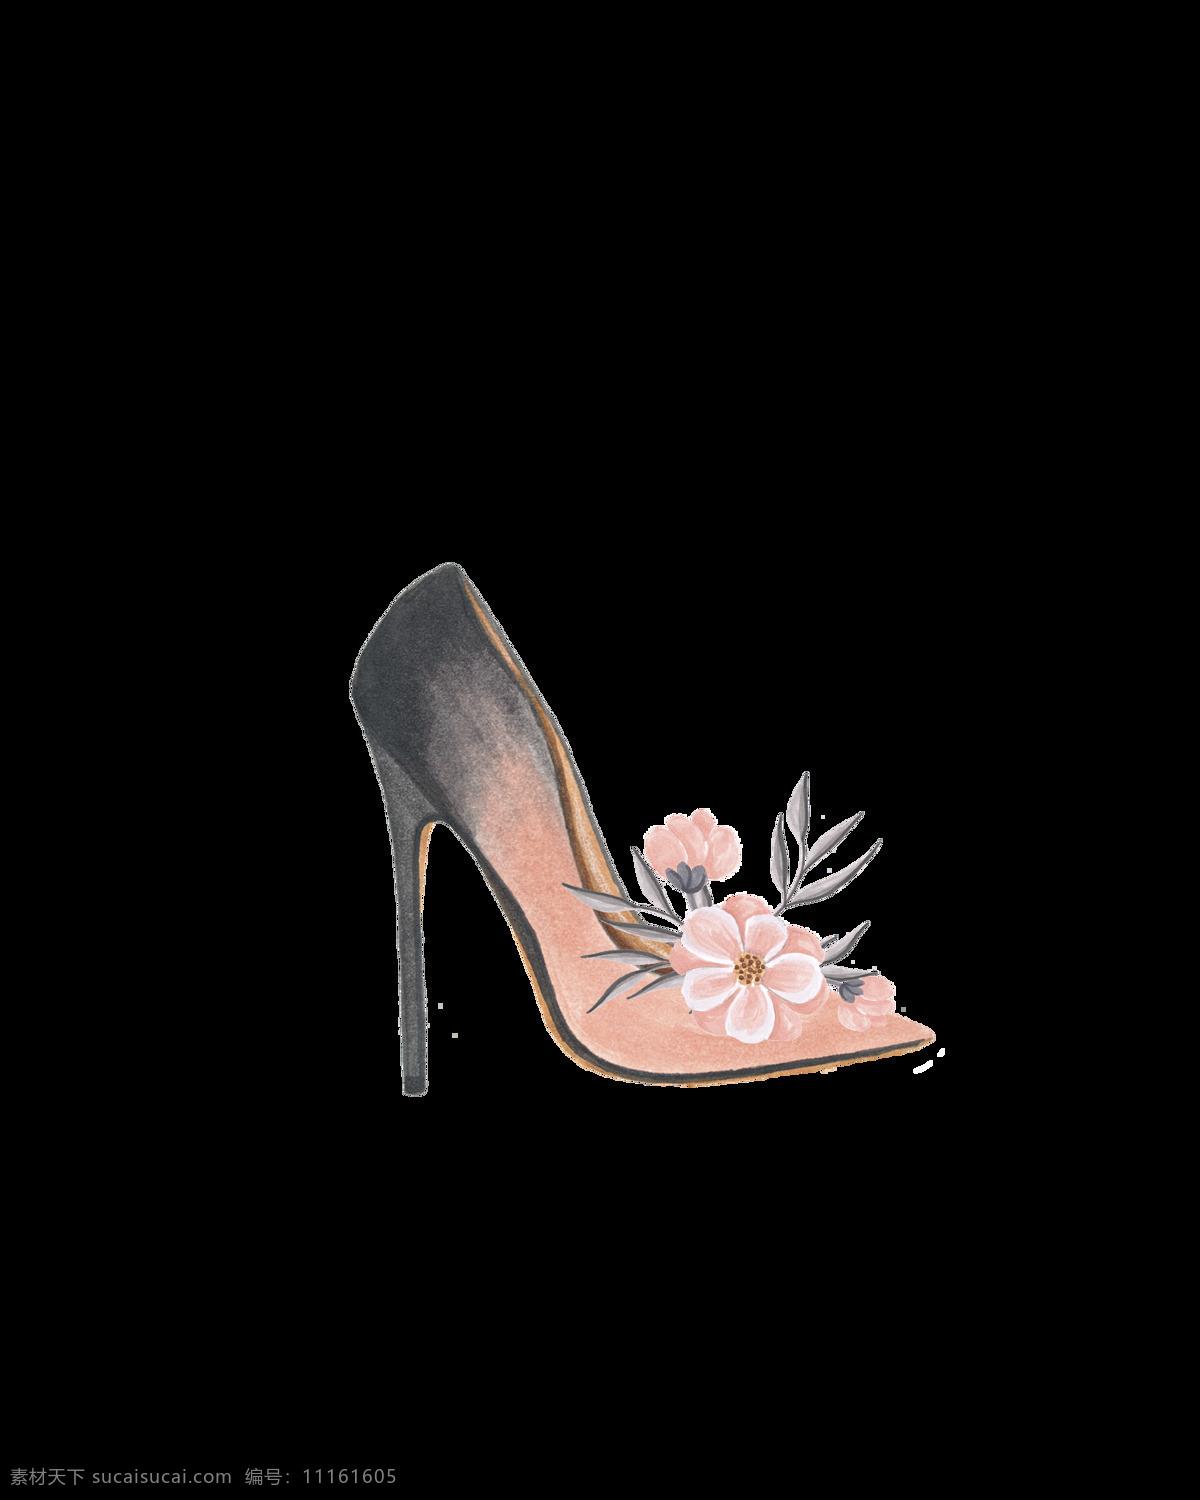 少女 高跟鞋 透明 花朵 粉色 矢量素材 设计素材